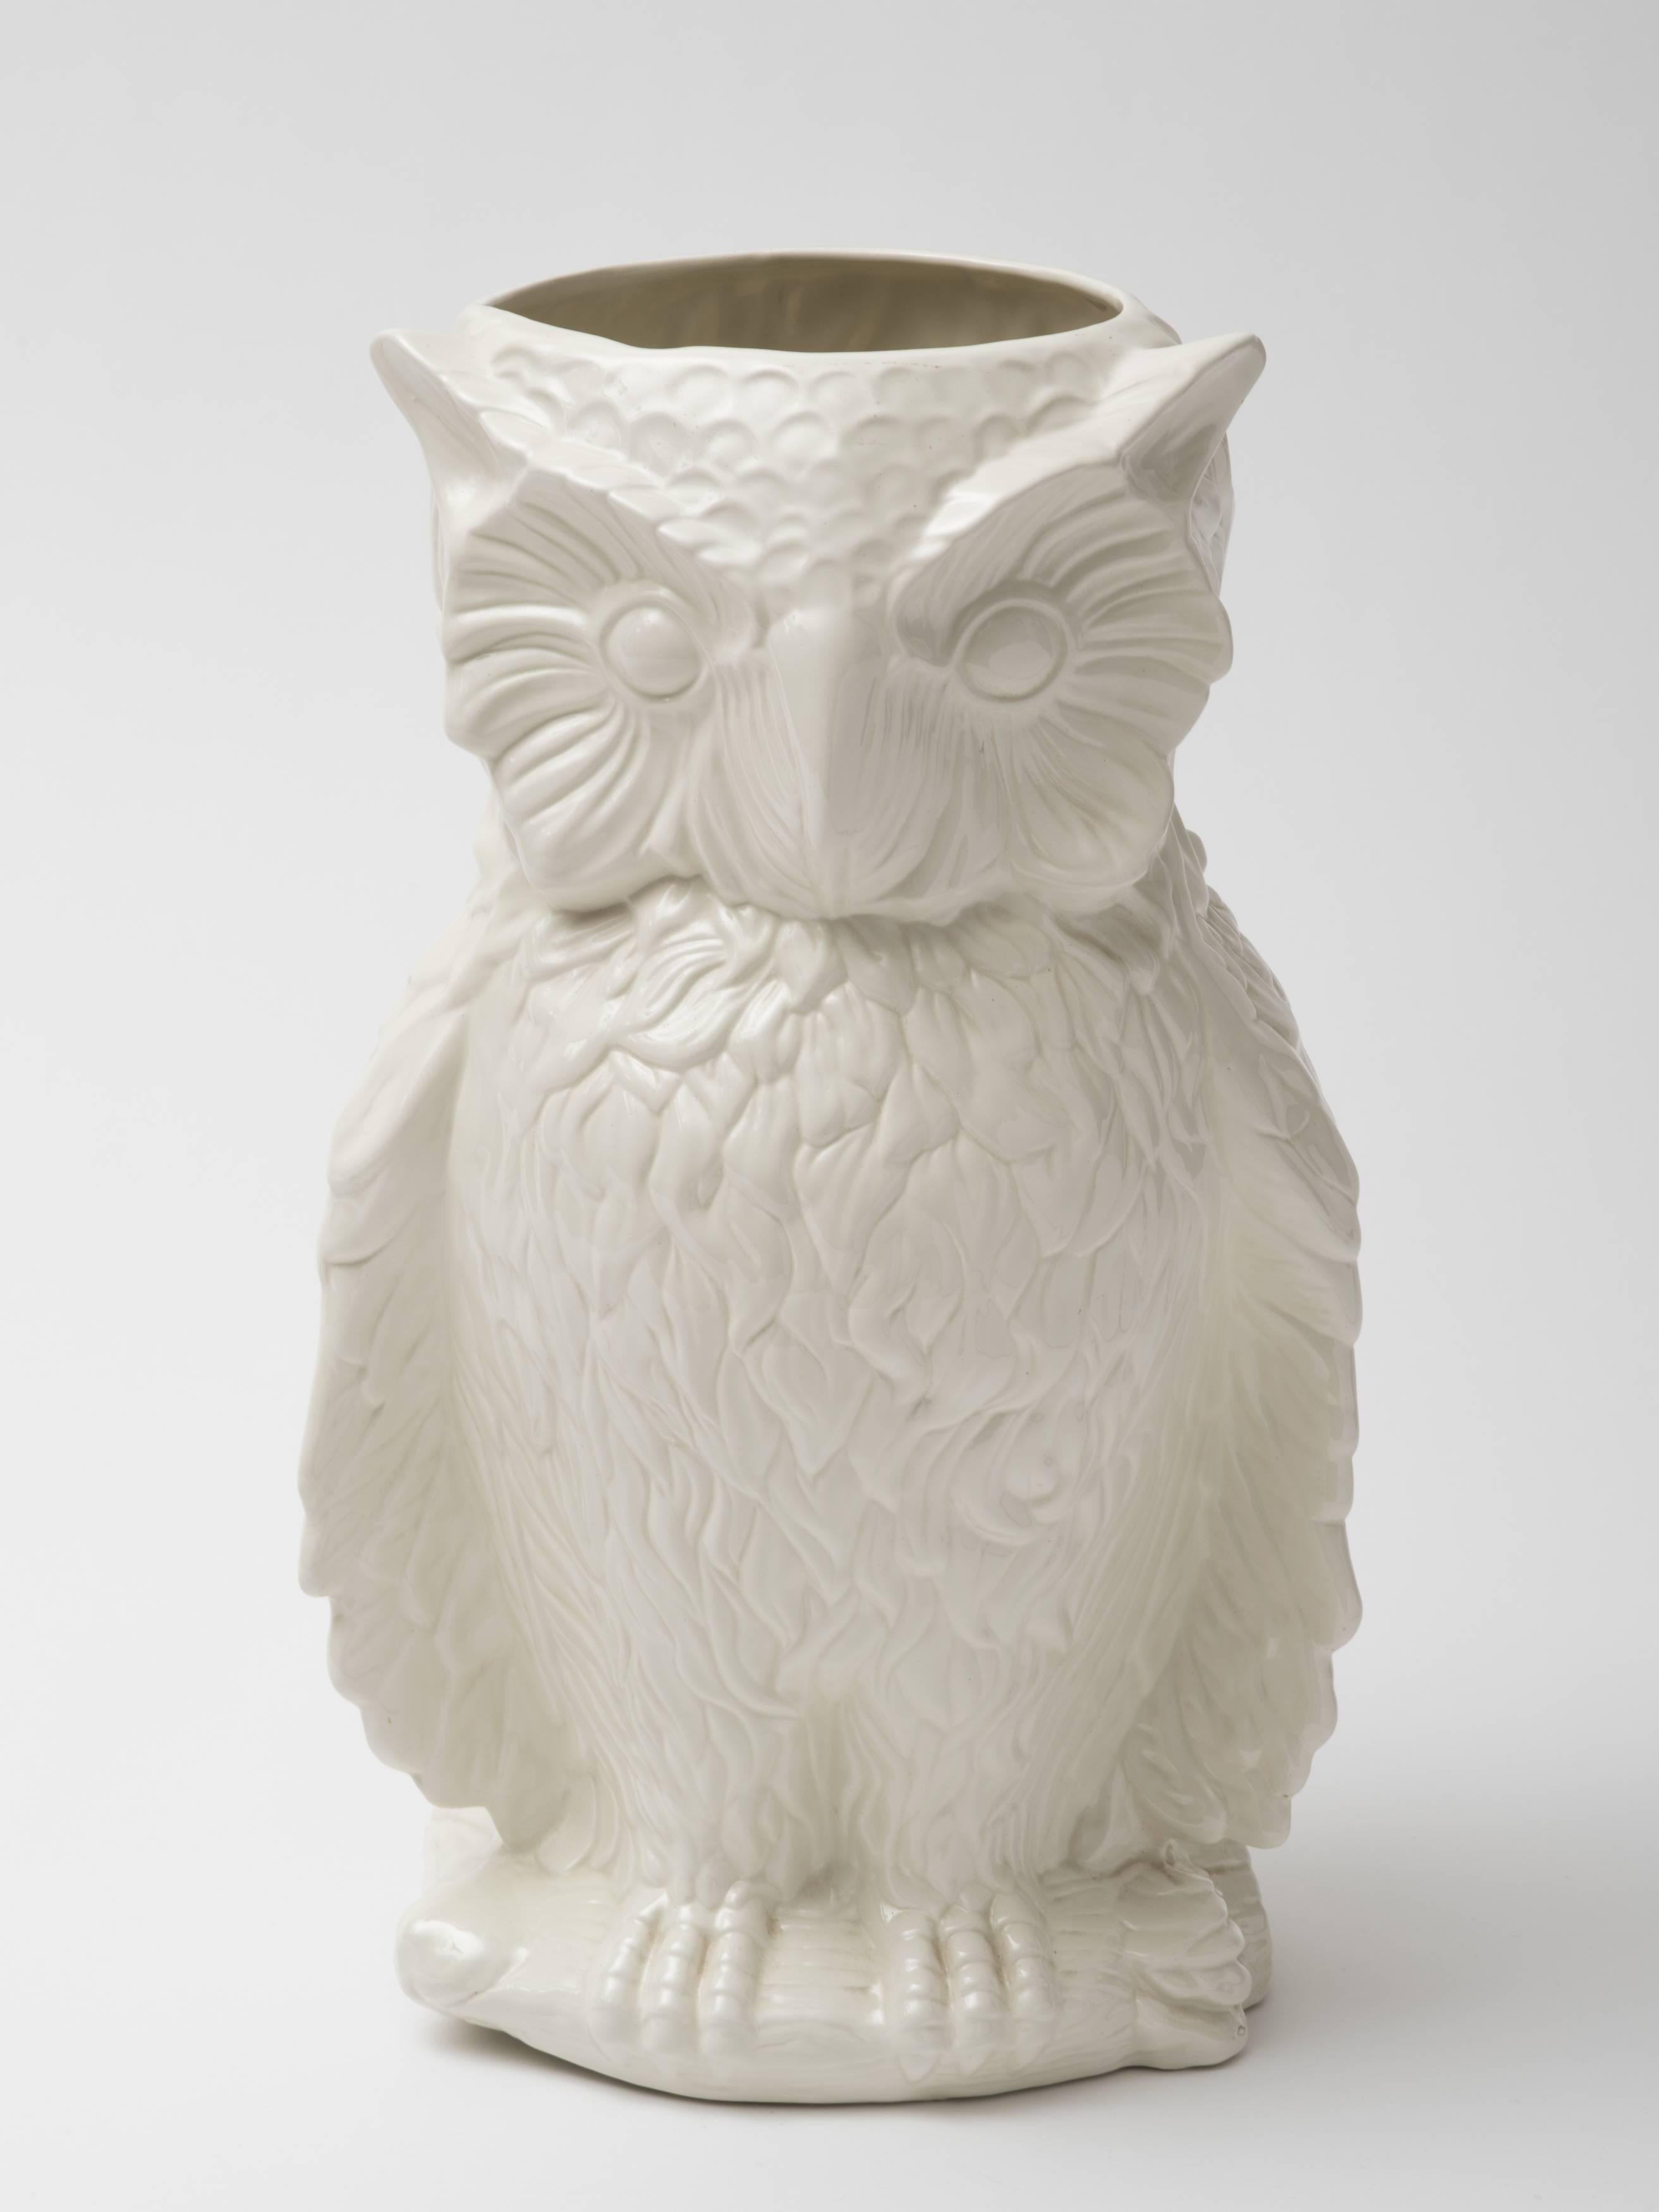 Molded Italian 1960s Ceramic Owl Umbrella Stand Vase